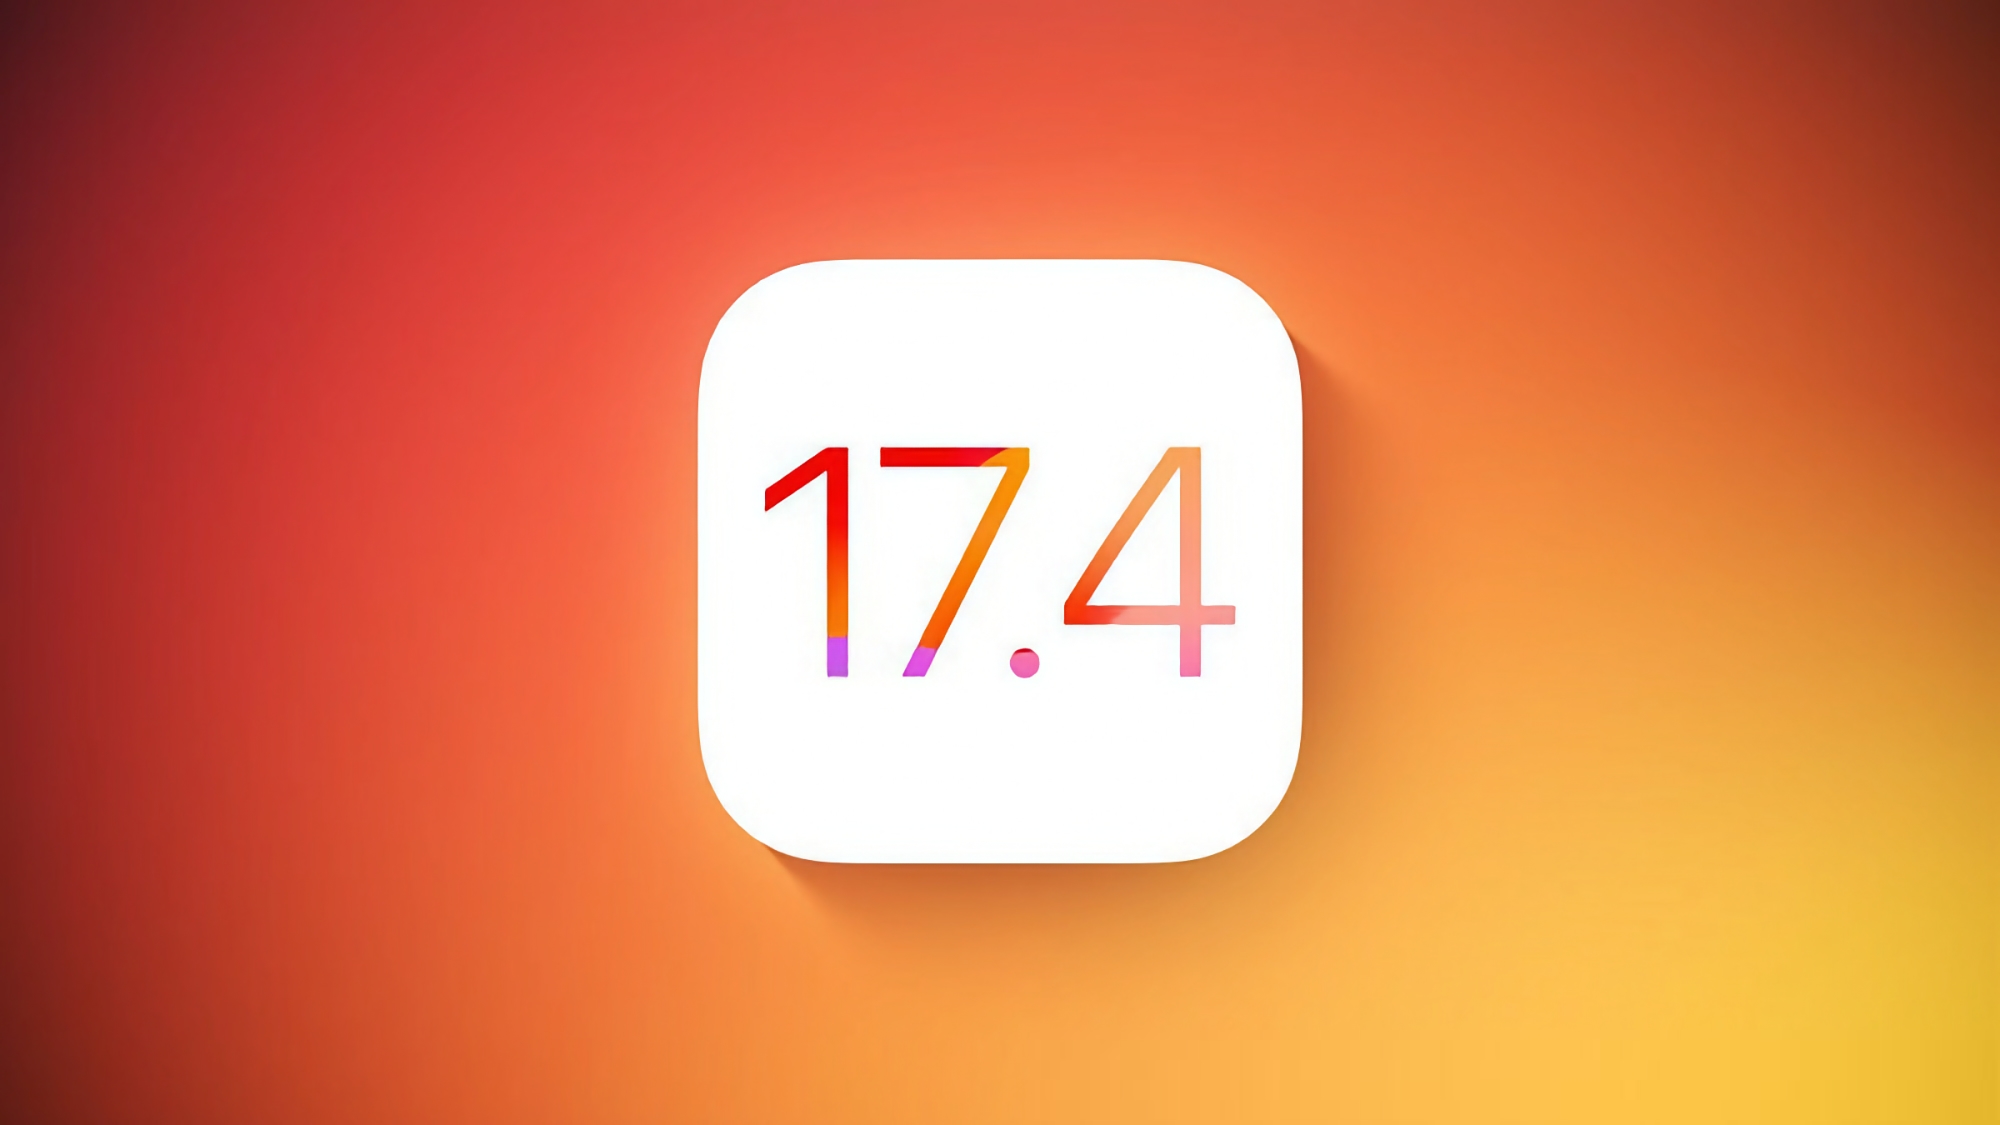 Apple a publié la deuxième version bêta d'iOS 17.4